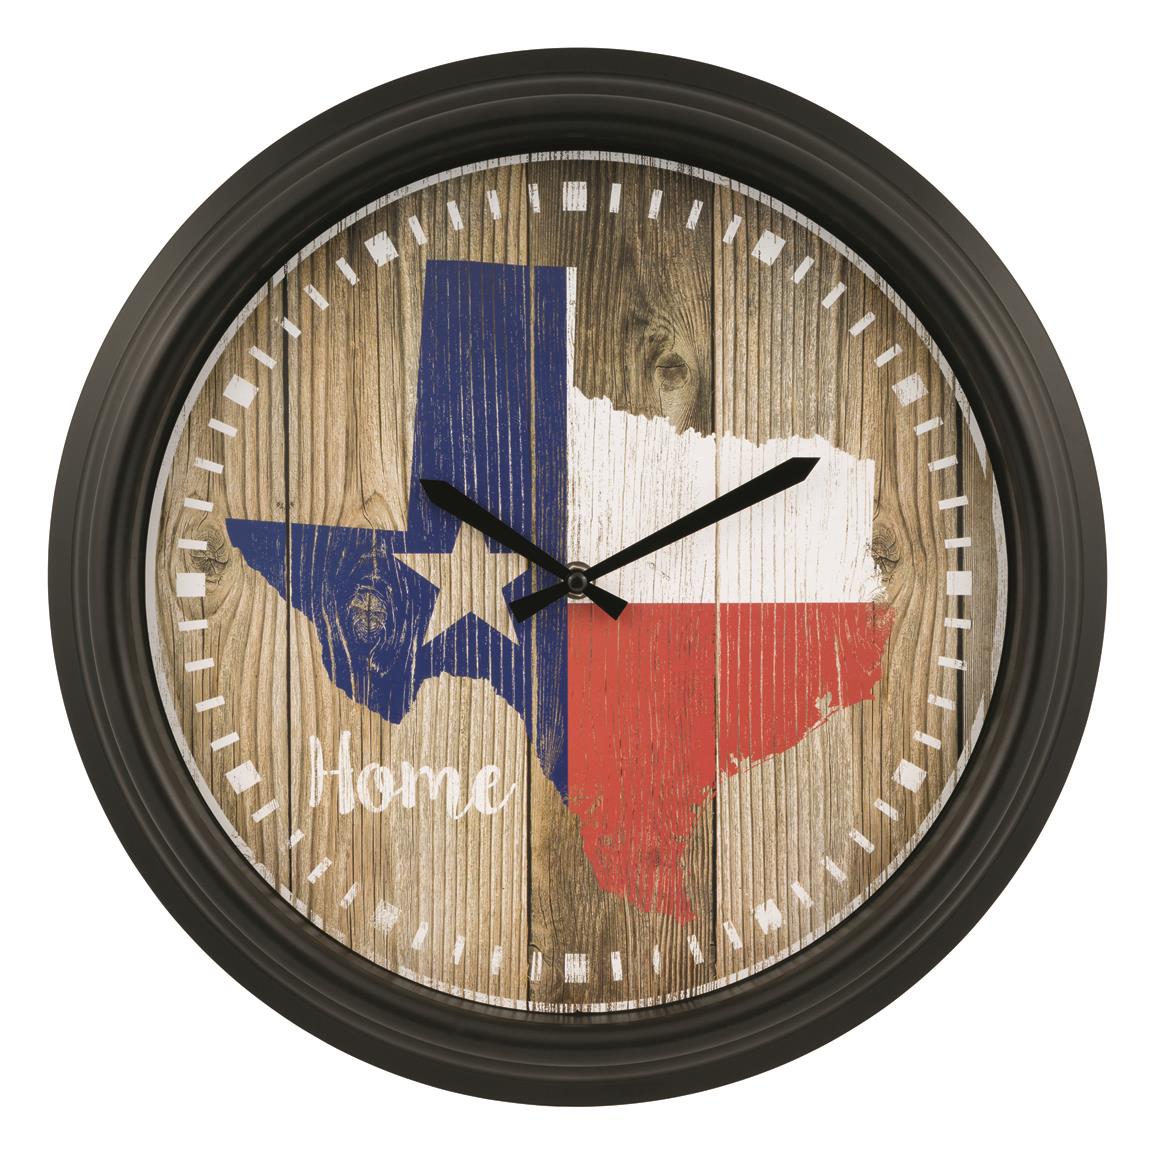 La Crosse Technology Texas Indoor/Outdoor Wall Clock